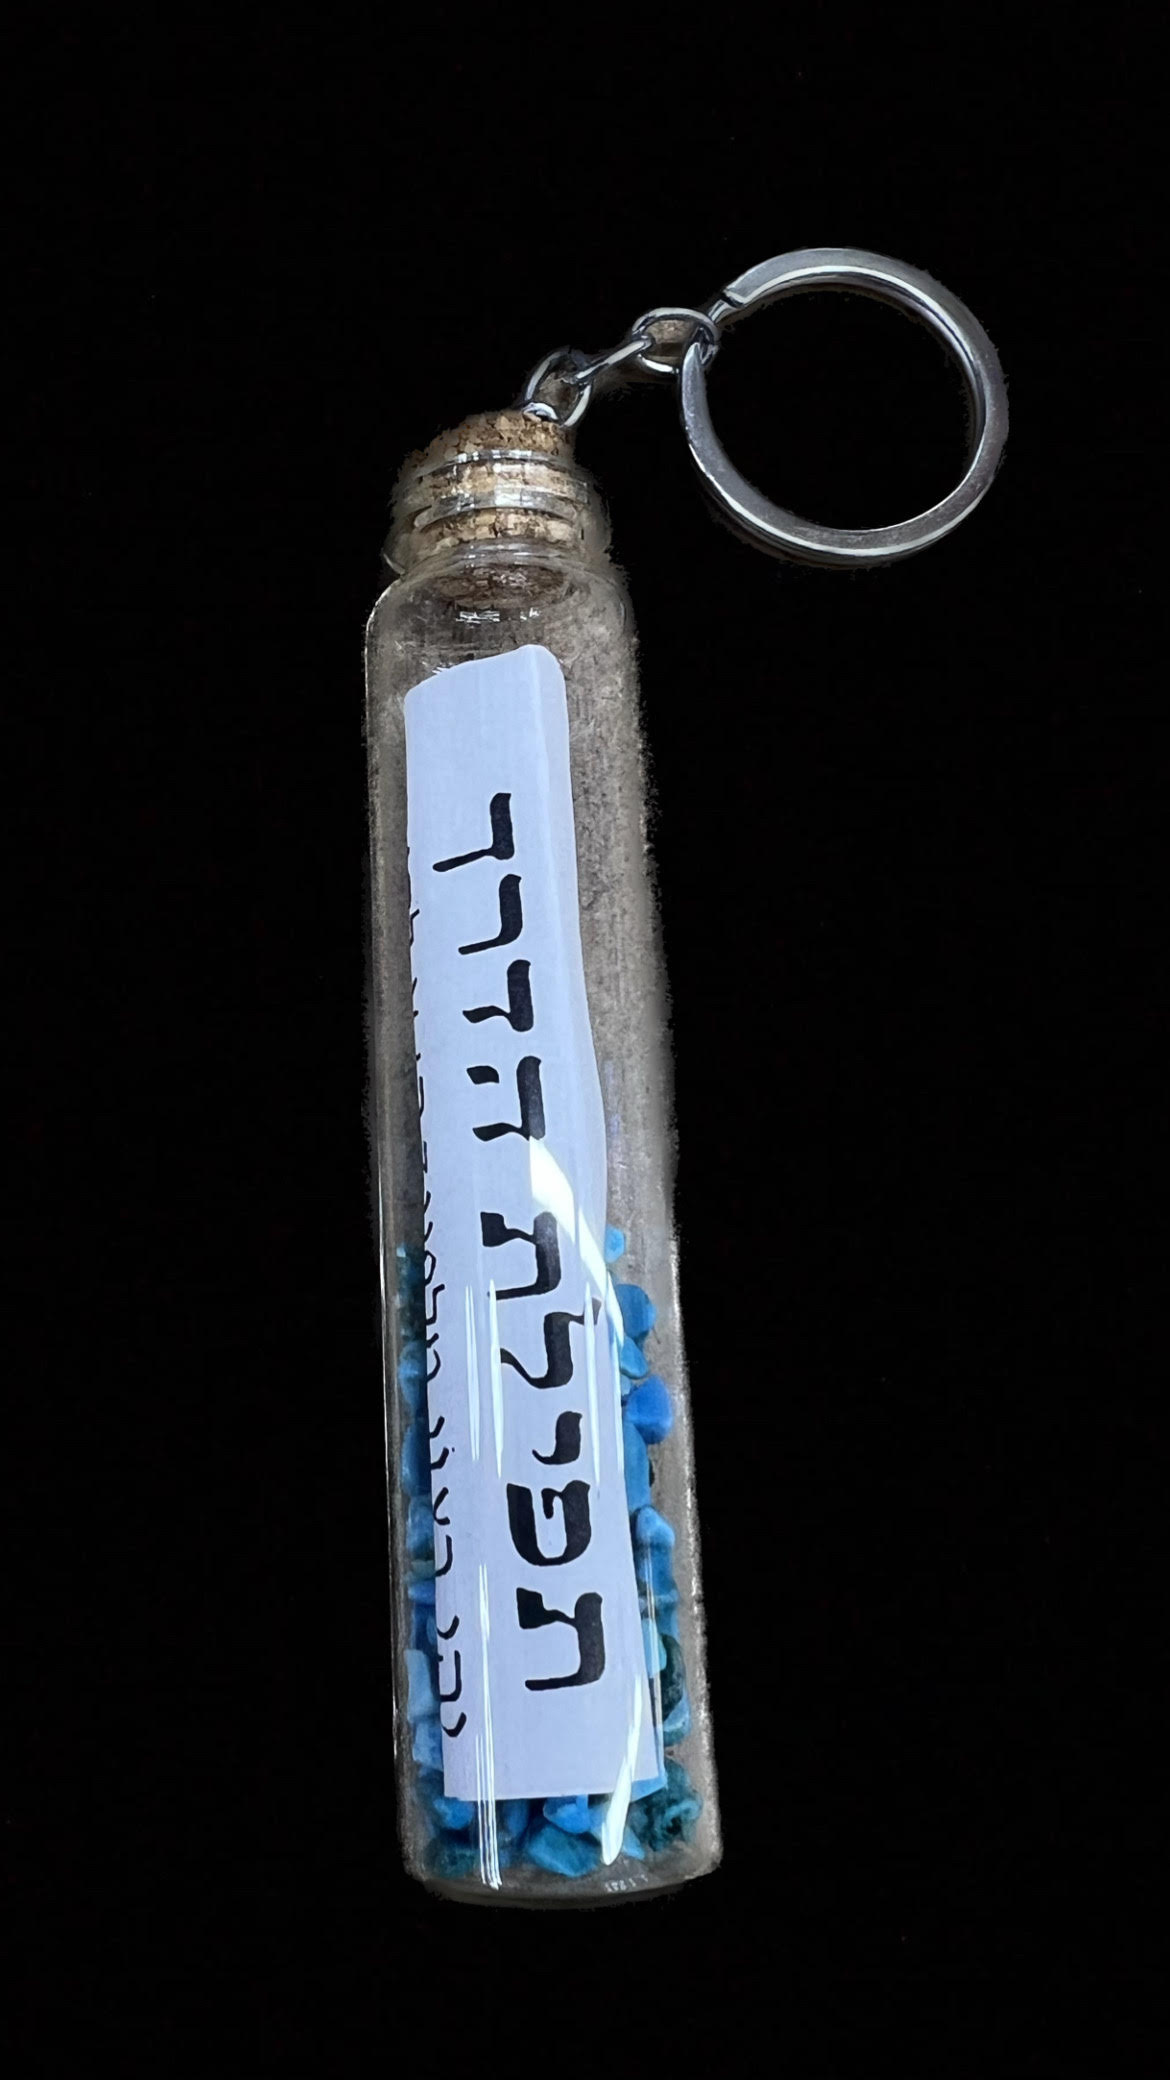 מחזיק מפתחות בצורת בקבוק בגודל 10.5x2 ס”מ.
הבקבוק מכיל אבנים קטנות בצבע כחול עם תפילת הדרך.